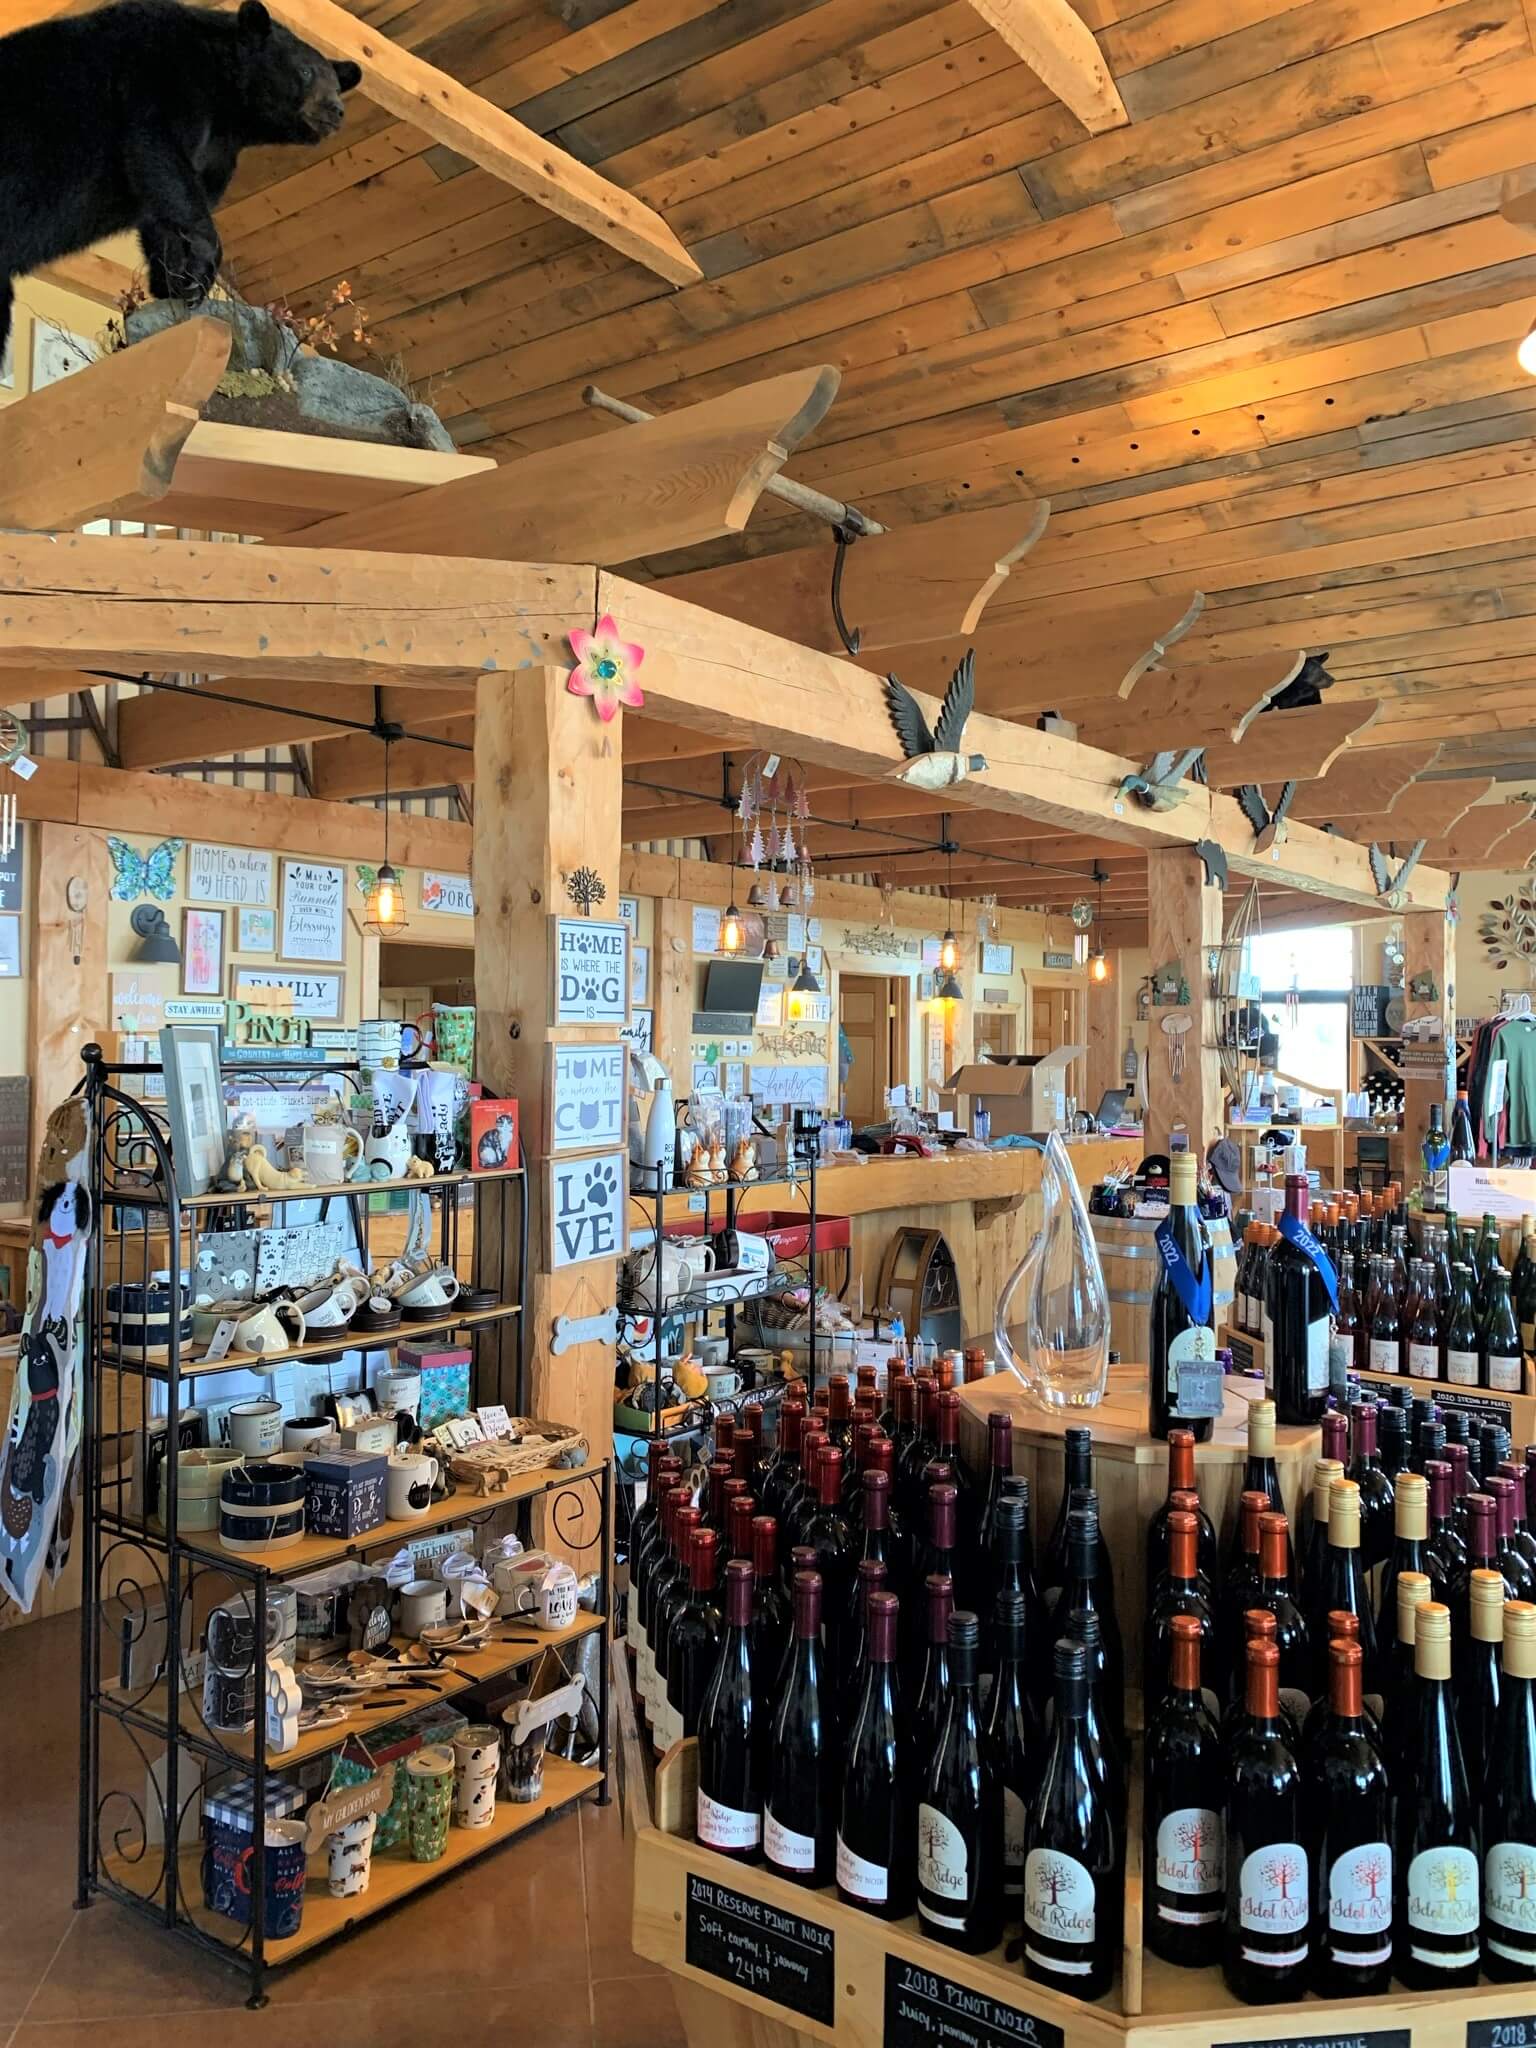 Idol Ridge Winery Tasting Room